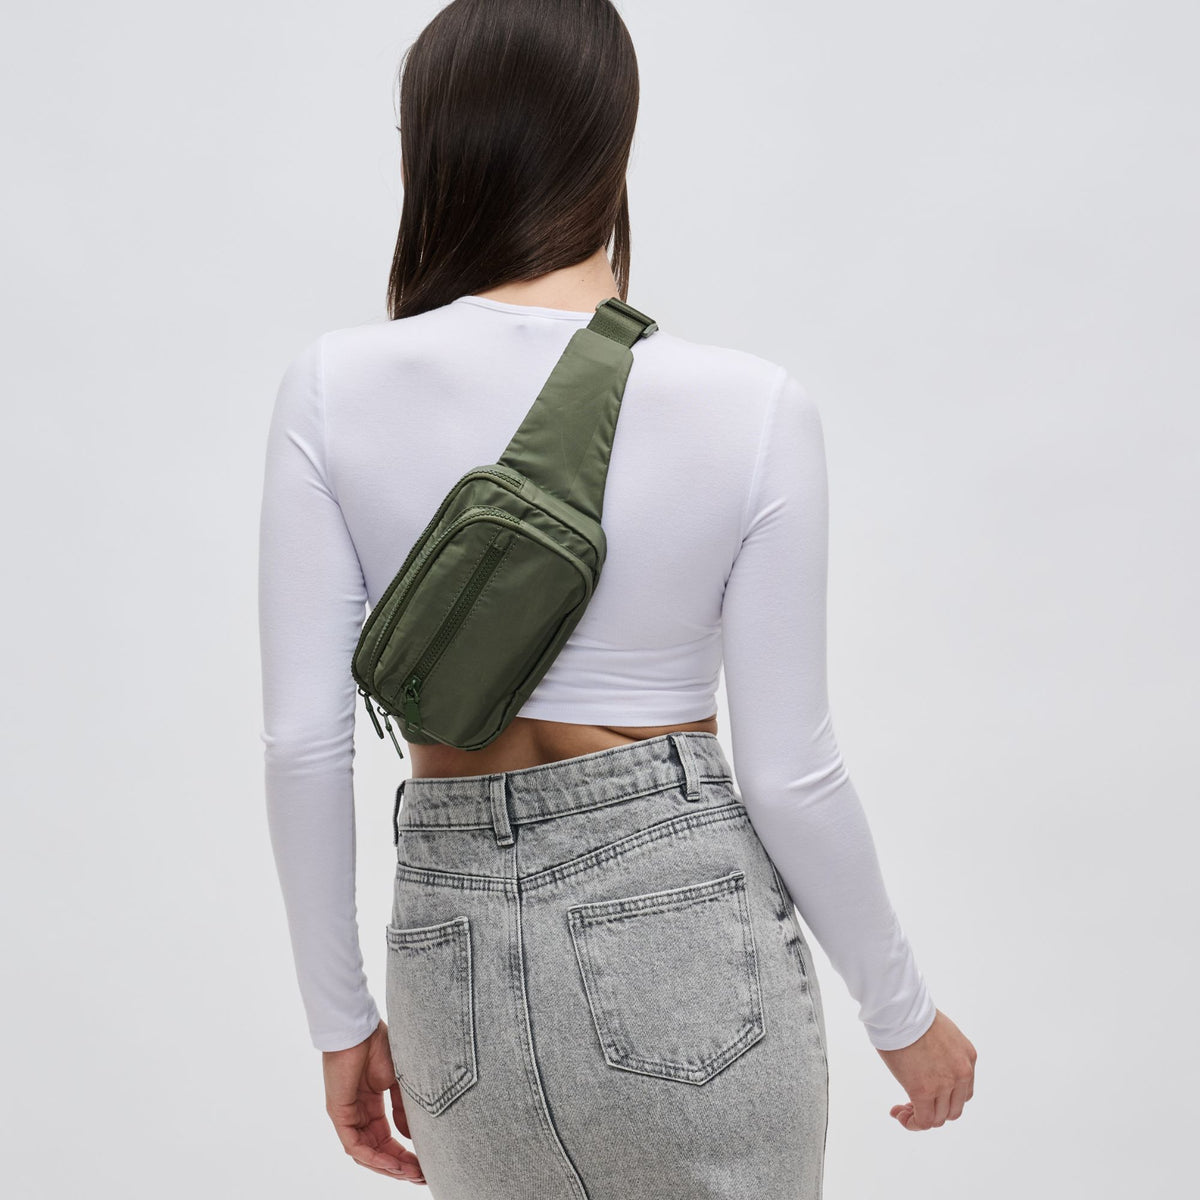 Woman wearing Olive Sol and Selene Hip Hugger Belt Bag 841764108270 View 2 | Olive